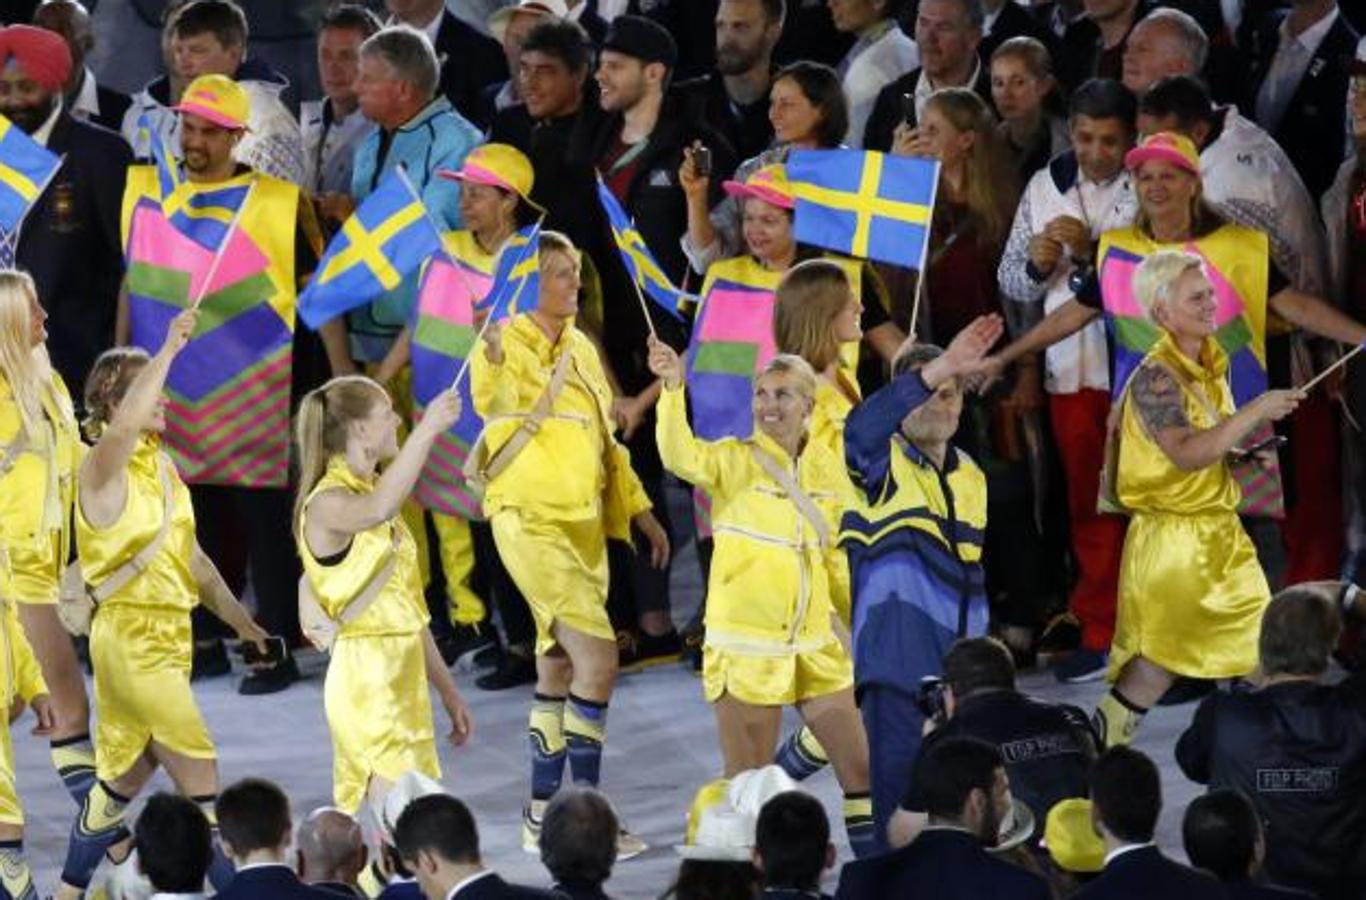 Grecia, los brillantes colores de su bandera. La delegación femenina griega lucía un atuendo formado por falda y chaqueta en un brillante color amarillo. Complementaban su conjunto con unas medias azules y una riñonera beige a la espalda.